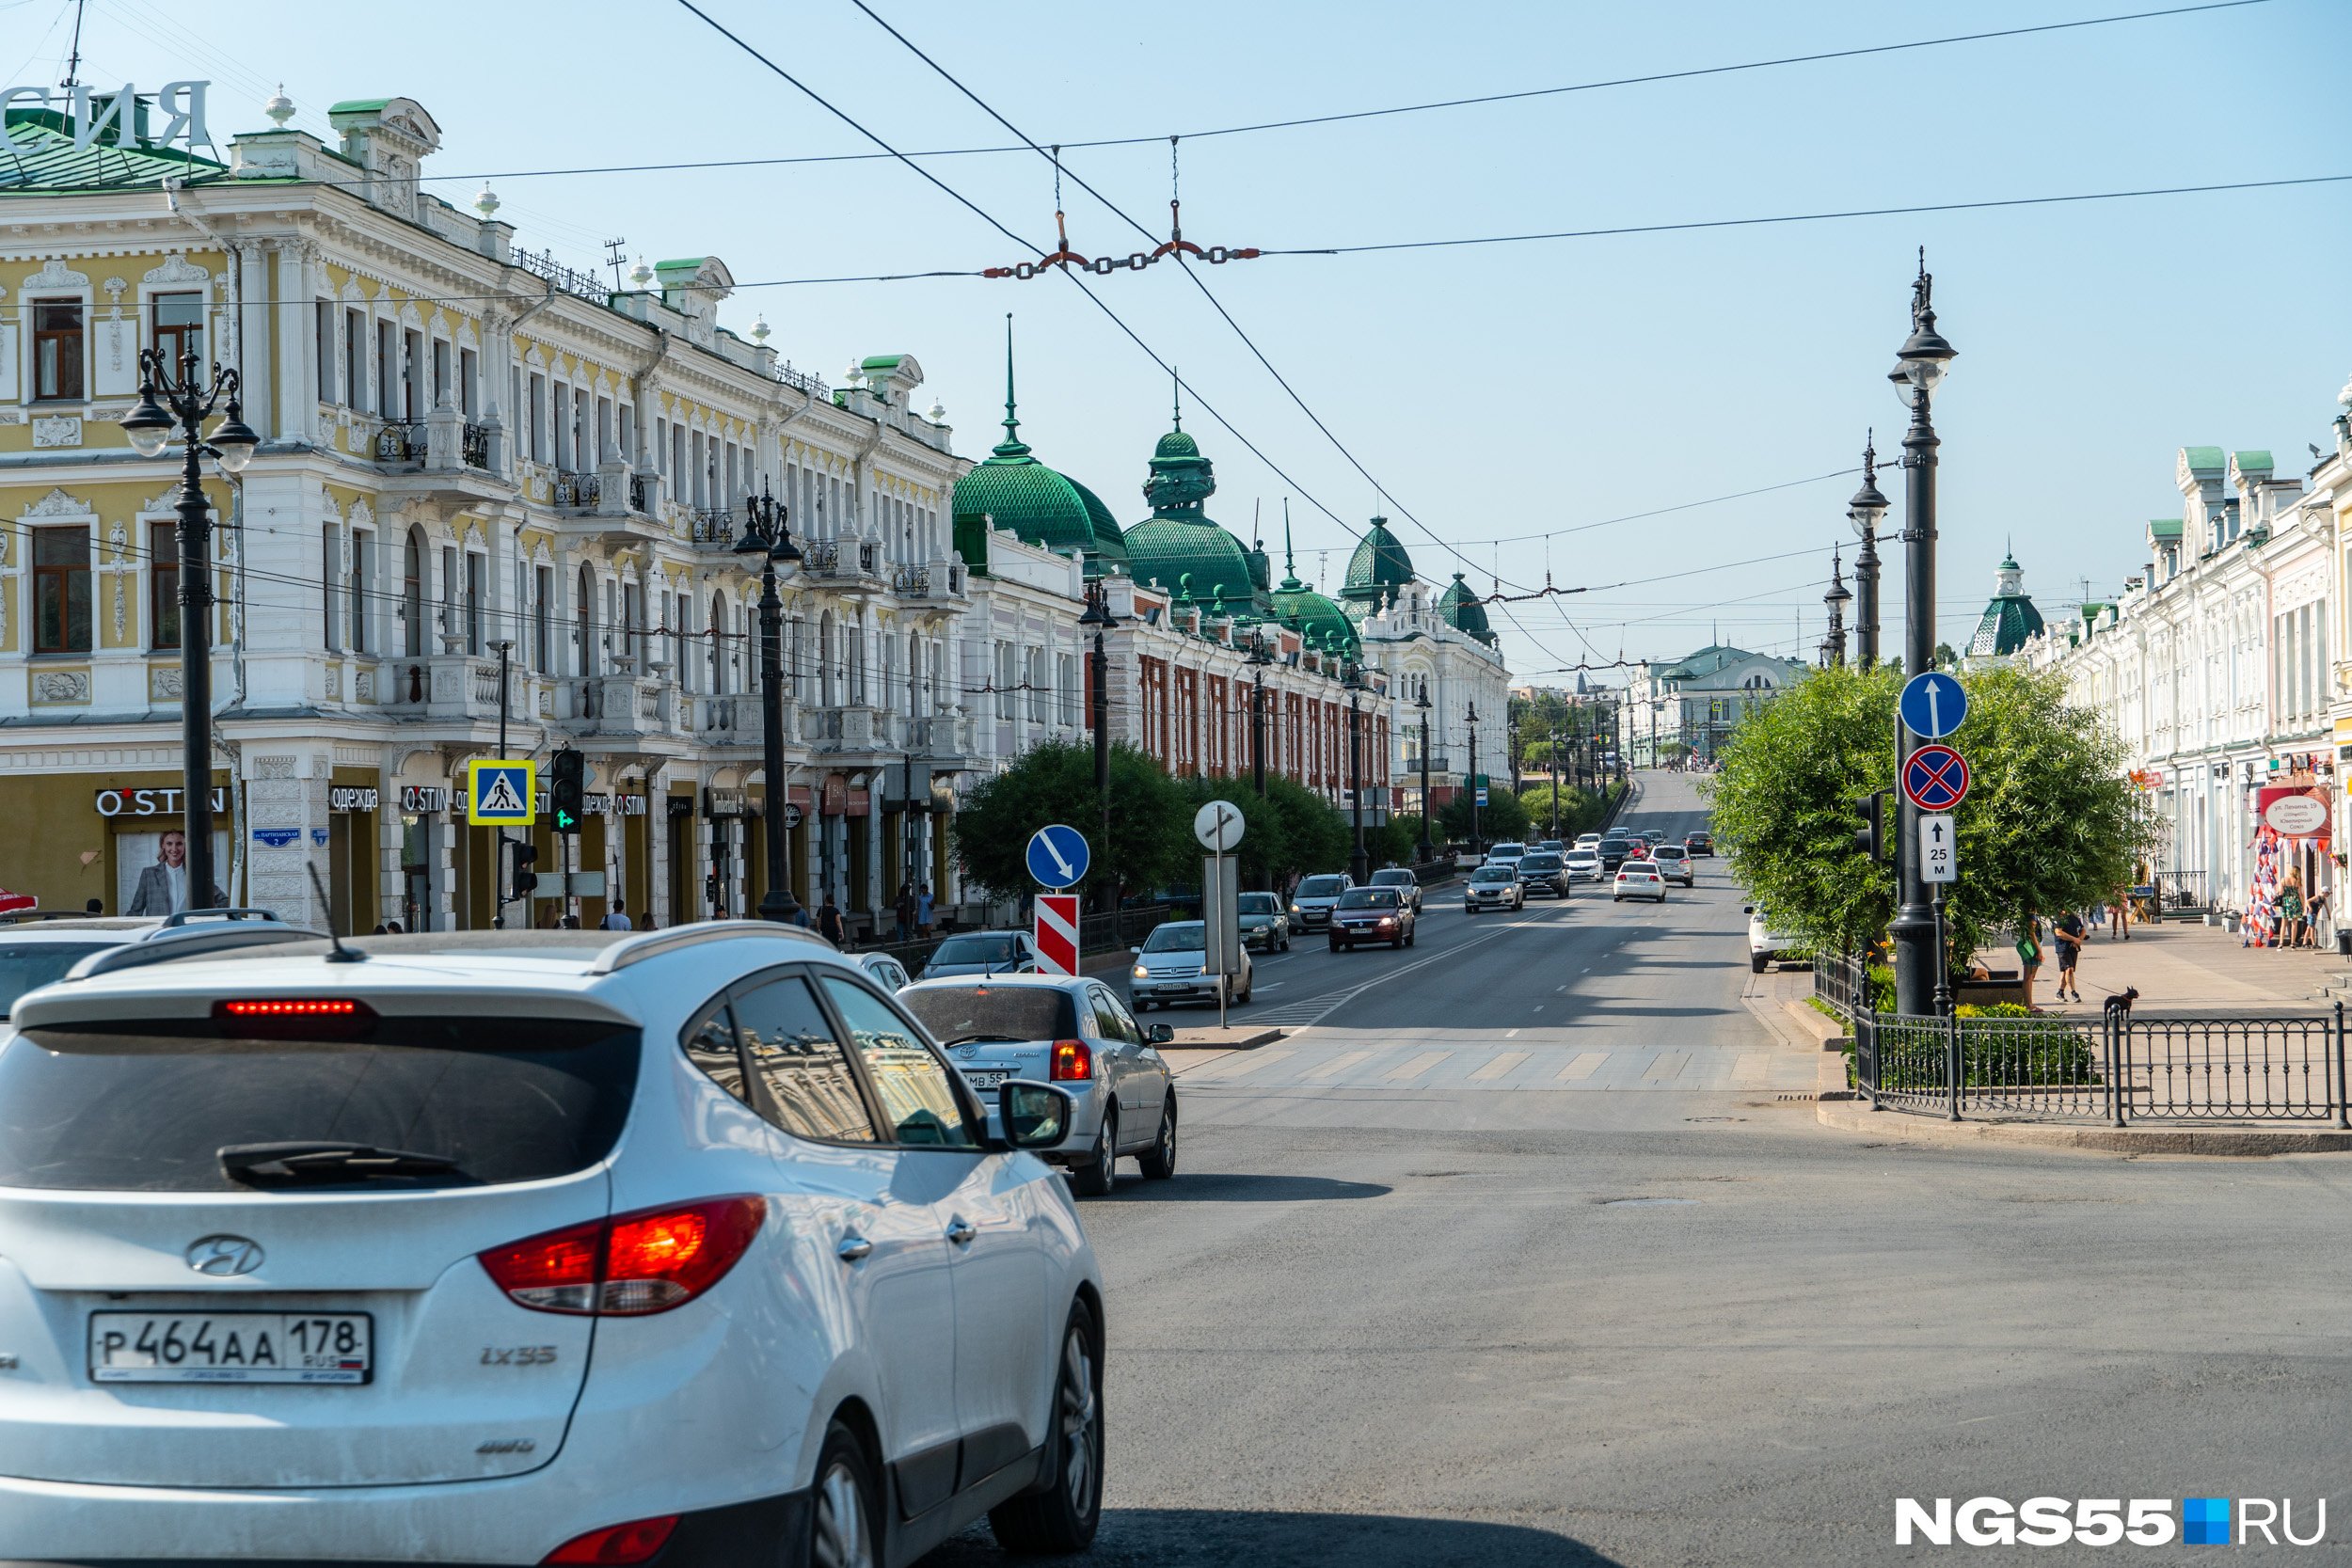 Власти планируют отремонтировать дорогу на Ленина за 48 миллионов рублей